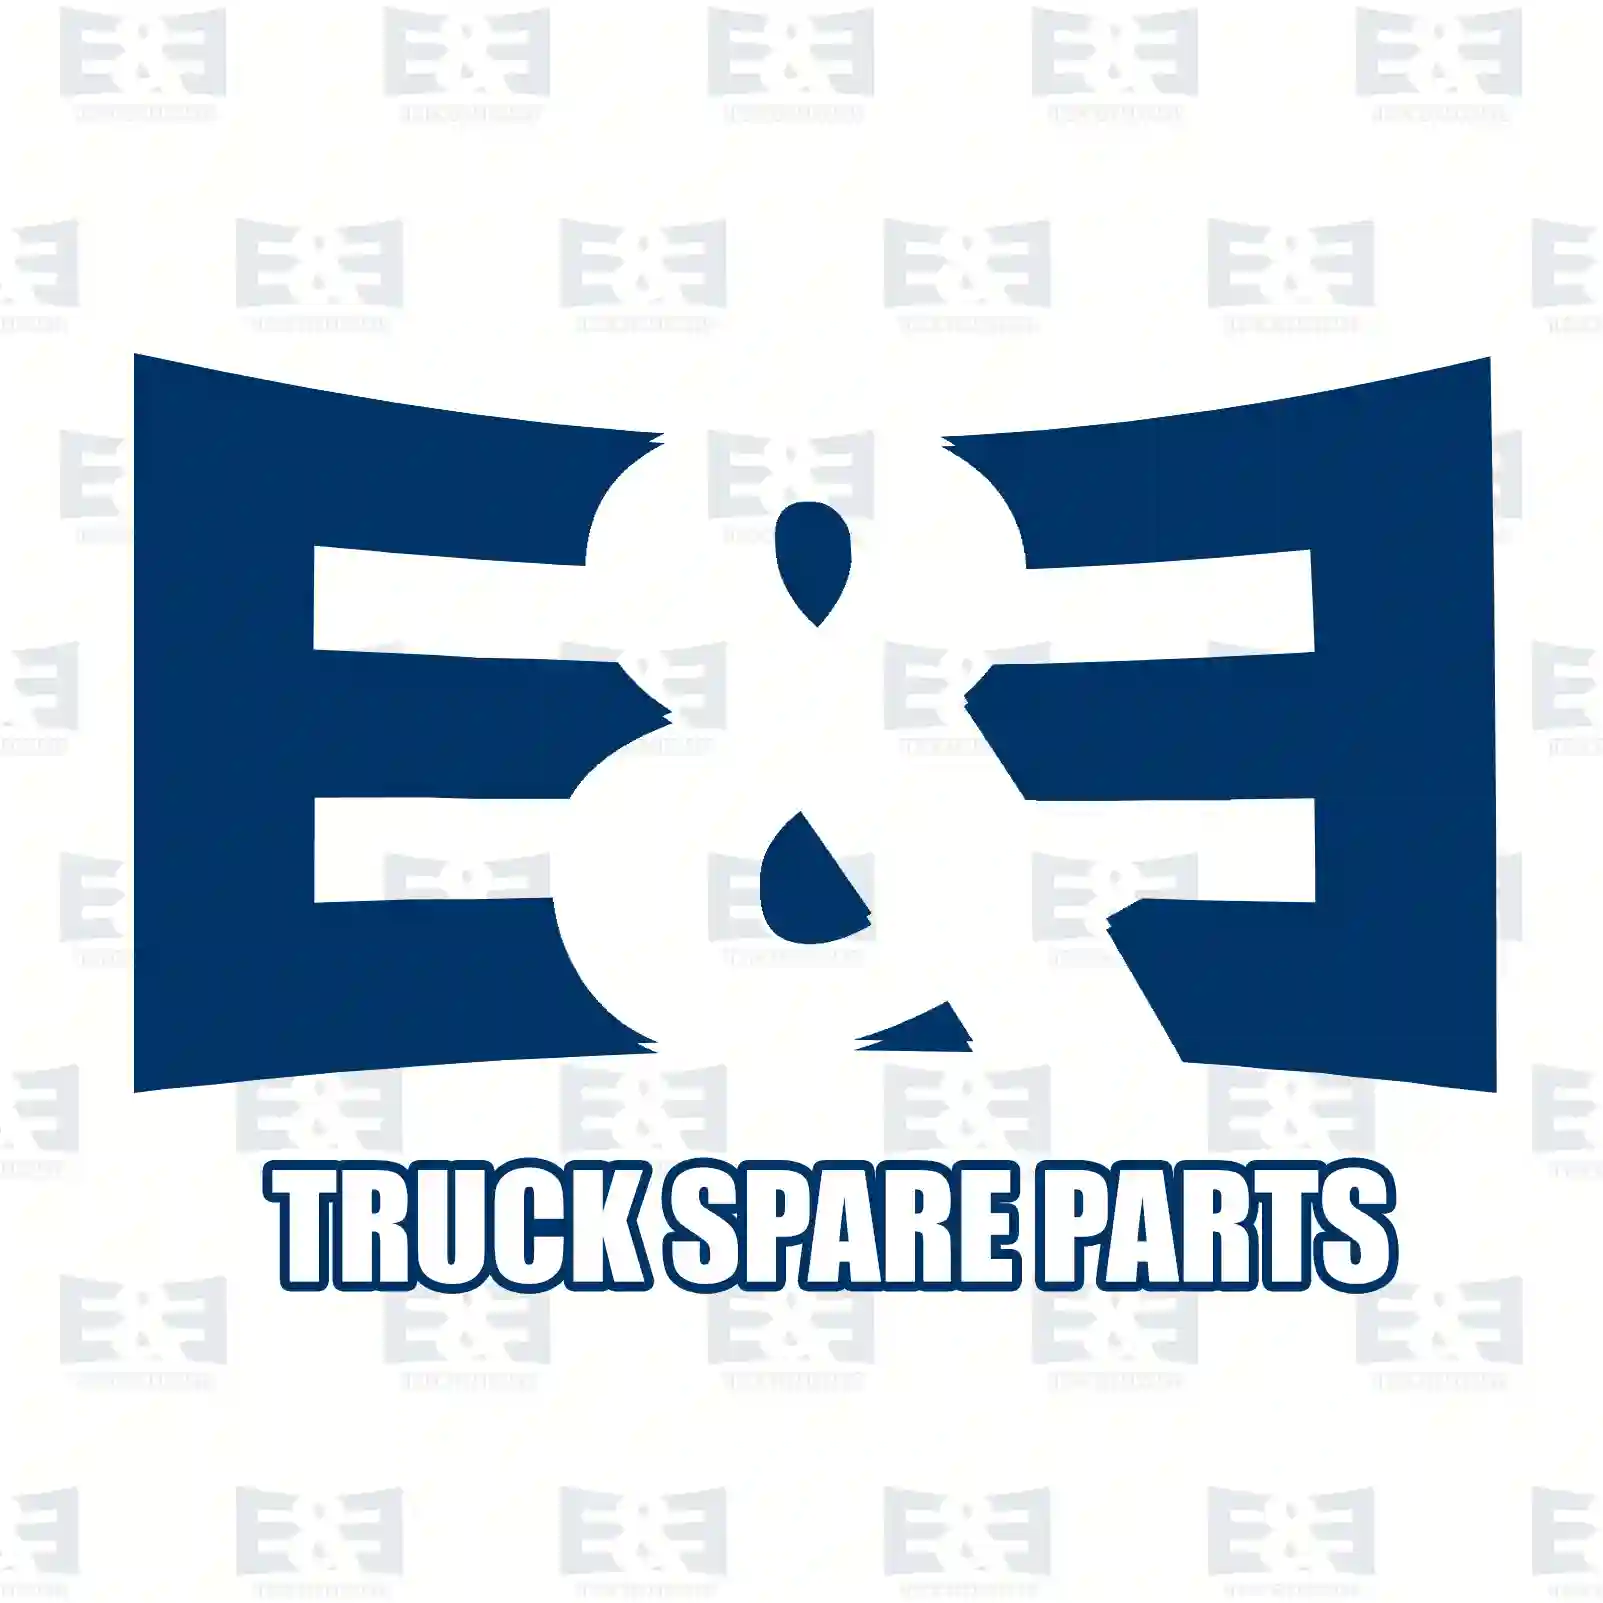 Filter kit, gearbox, 2E2277627, 1503247, 1860299, 2578823 ||  2E2277627 E&E Truck Spare Parts | Truck Spare Parts, Auotomotive Spare Parts Filter kit, gearbox, 2E2277627, 1503247, 1860299, 2578823 ||  2E2277627 E&E Truck Spare Parts | Truck Spare Parts, Auotomotive Spare Parts